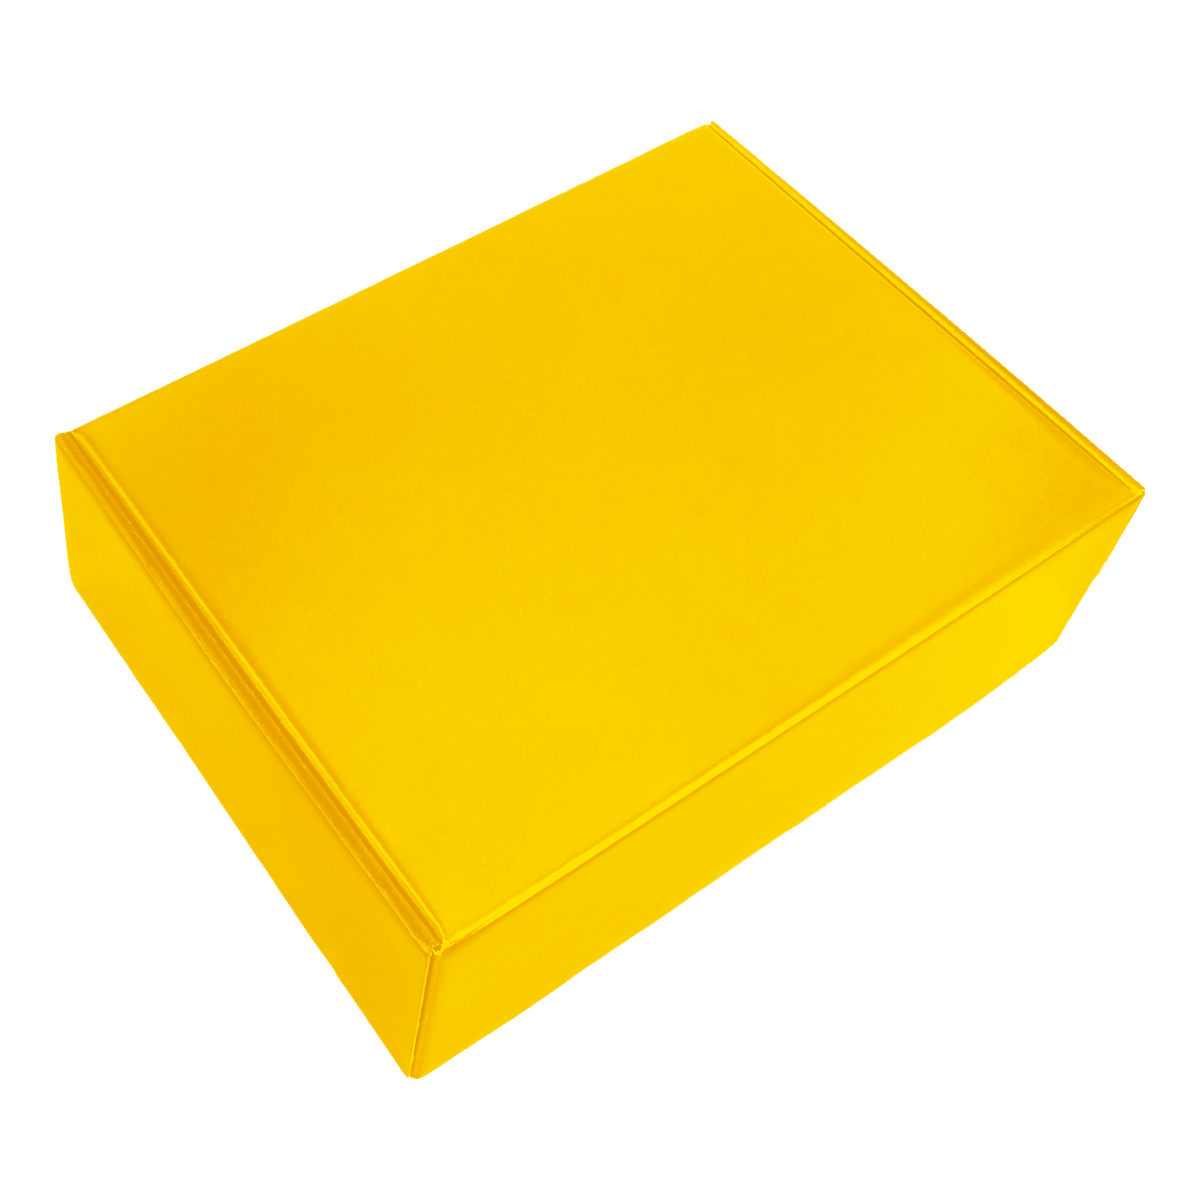 Набор Hot Box C B (желтый), желтый, металл, микрогофрокартон